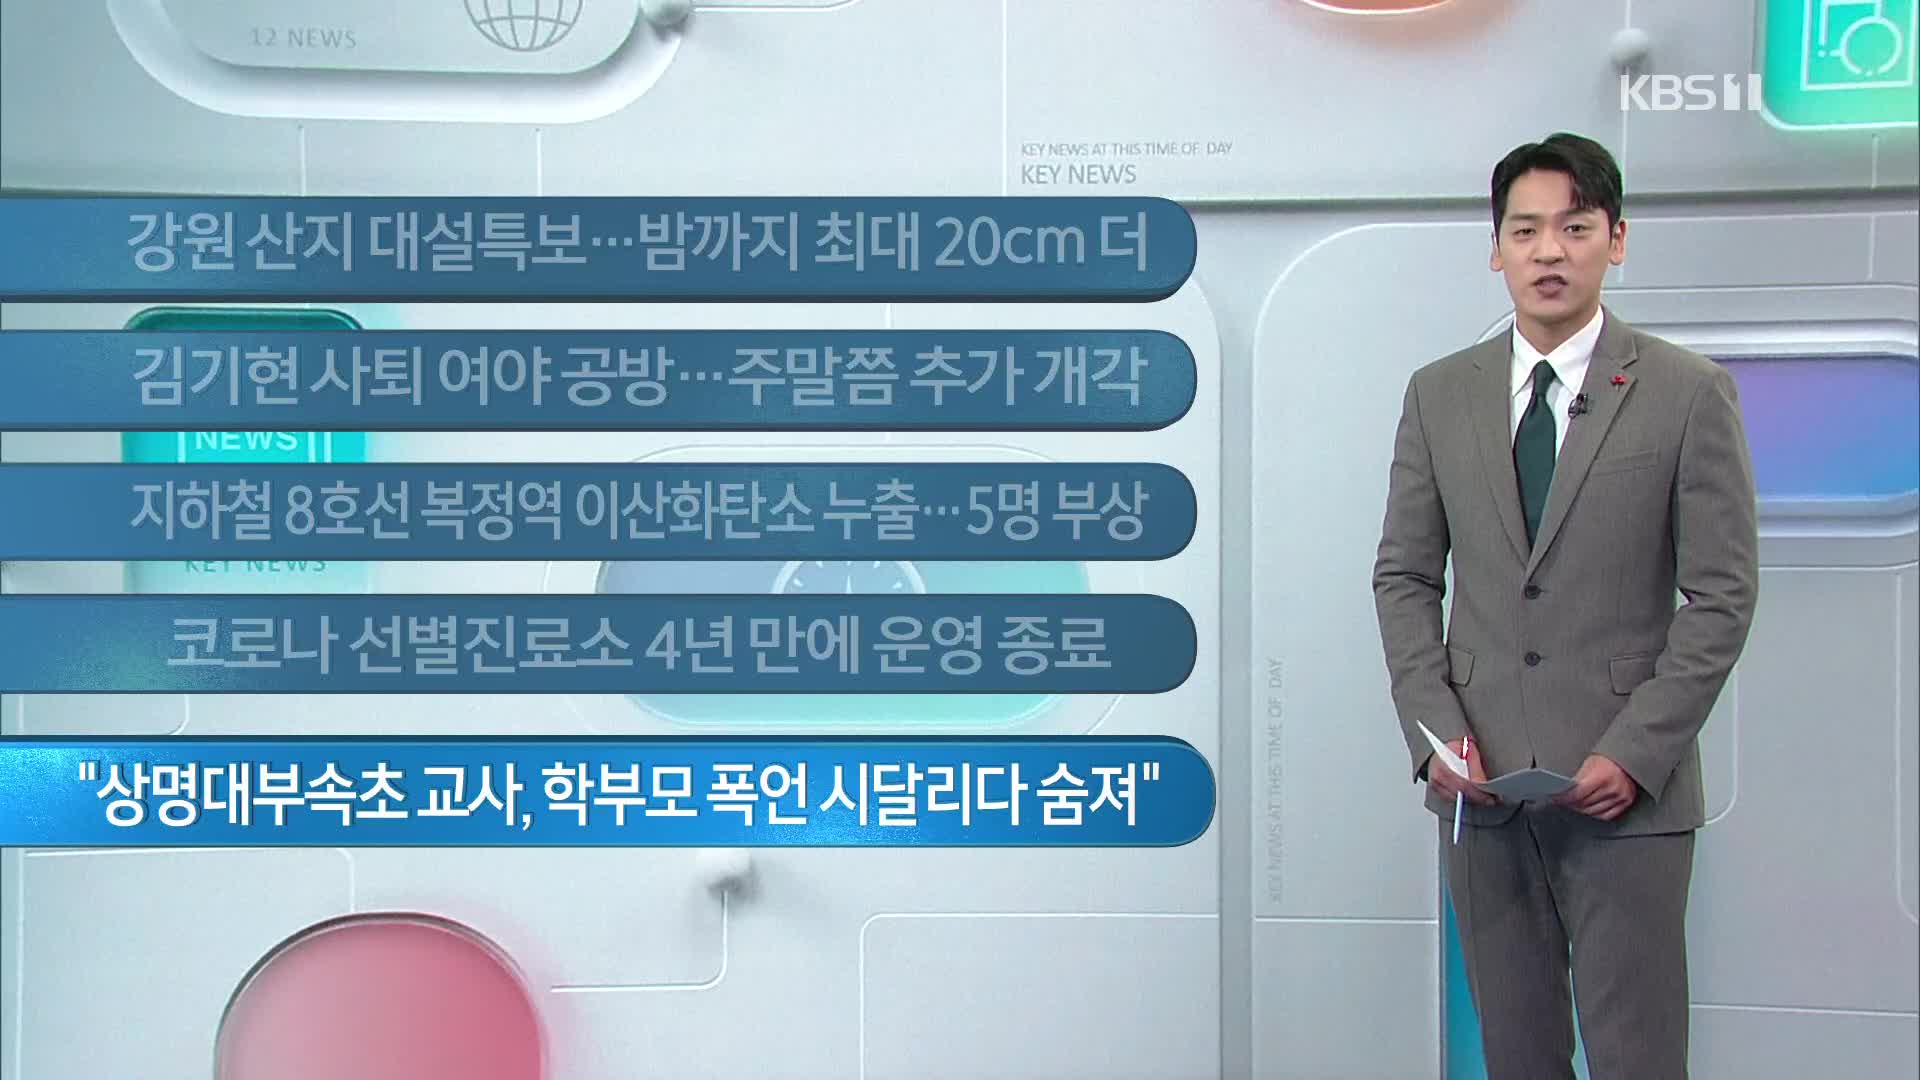 [이 시각 주요뉴스] 강원 산지 대설특보…밤까지 최대 20cm 더 외